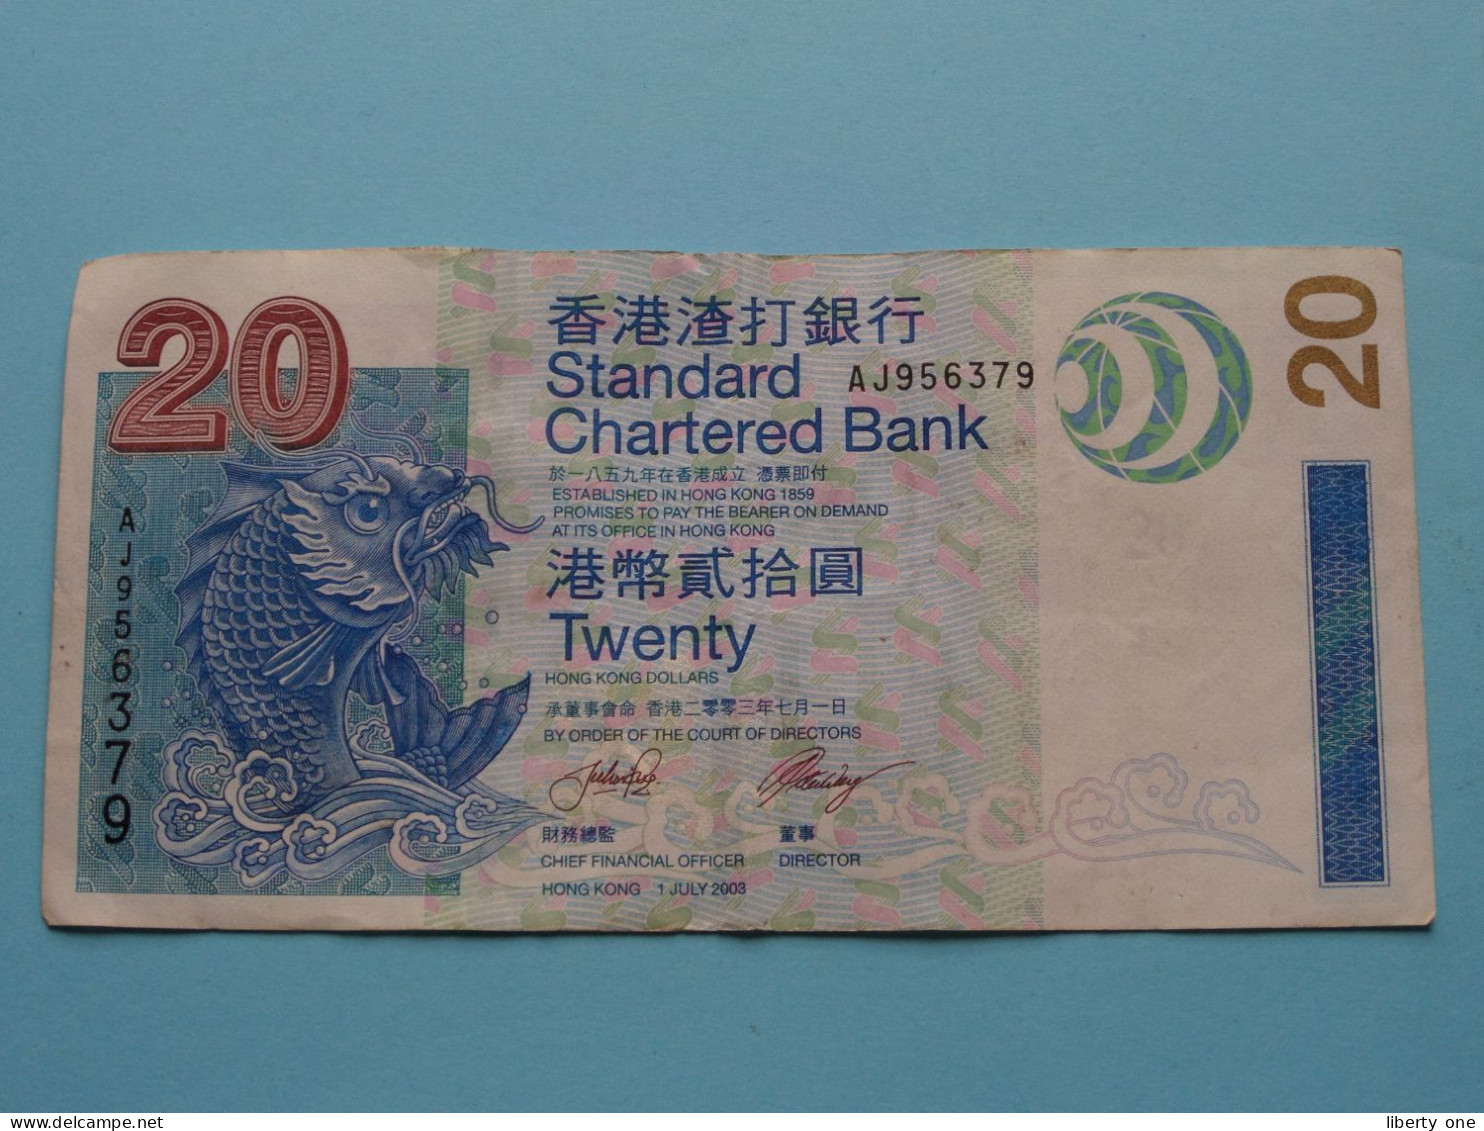 20 Hong Kong DOLLARS (AJ956379) 1 July 2003 Standard Chartered Bank HONG KONG ( See Scans ) Circulated ! - Hong Kong